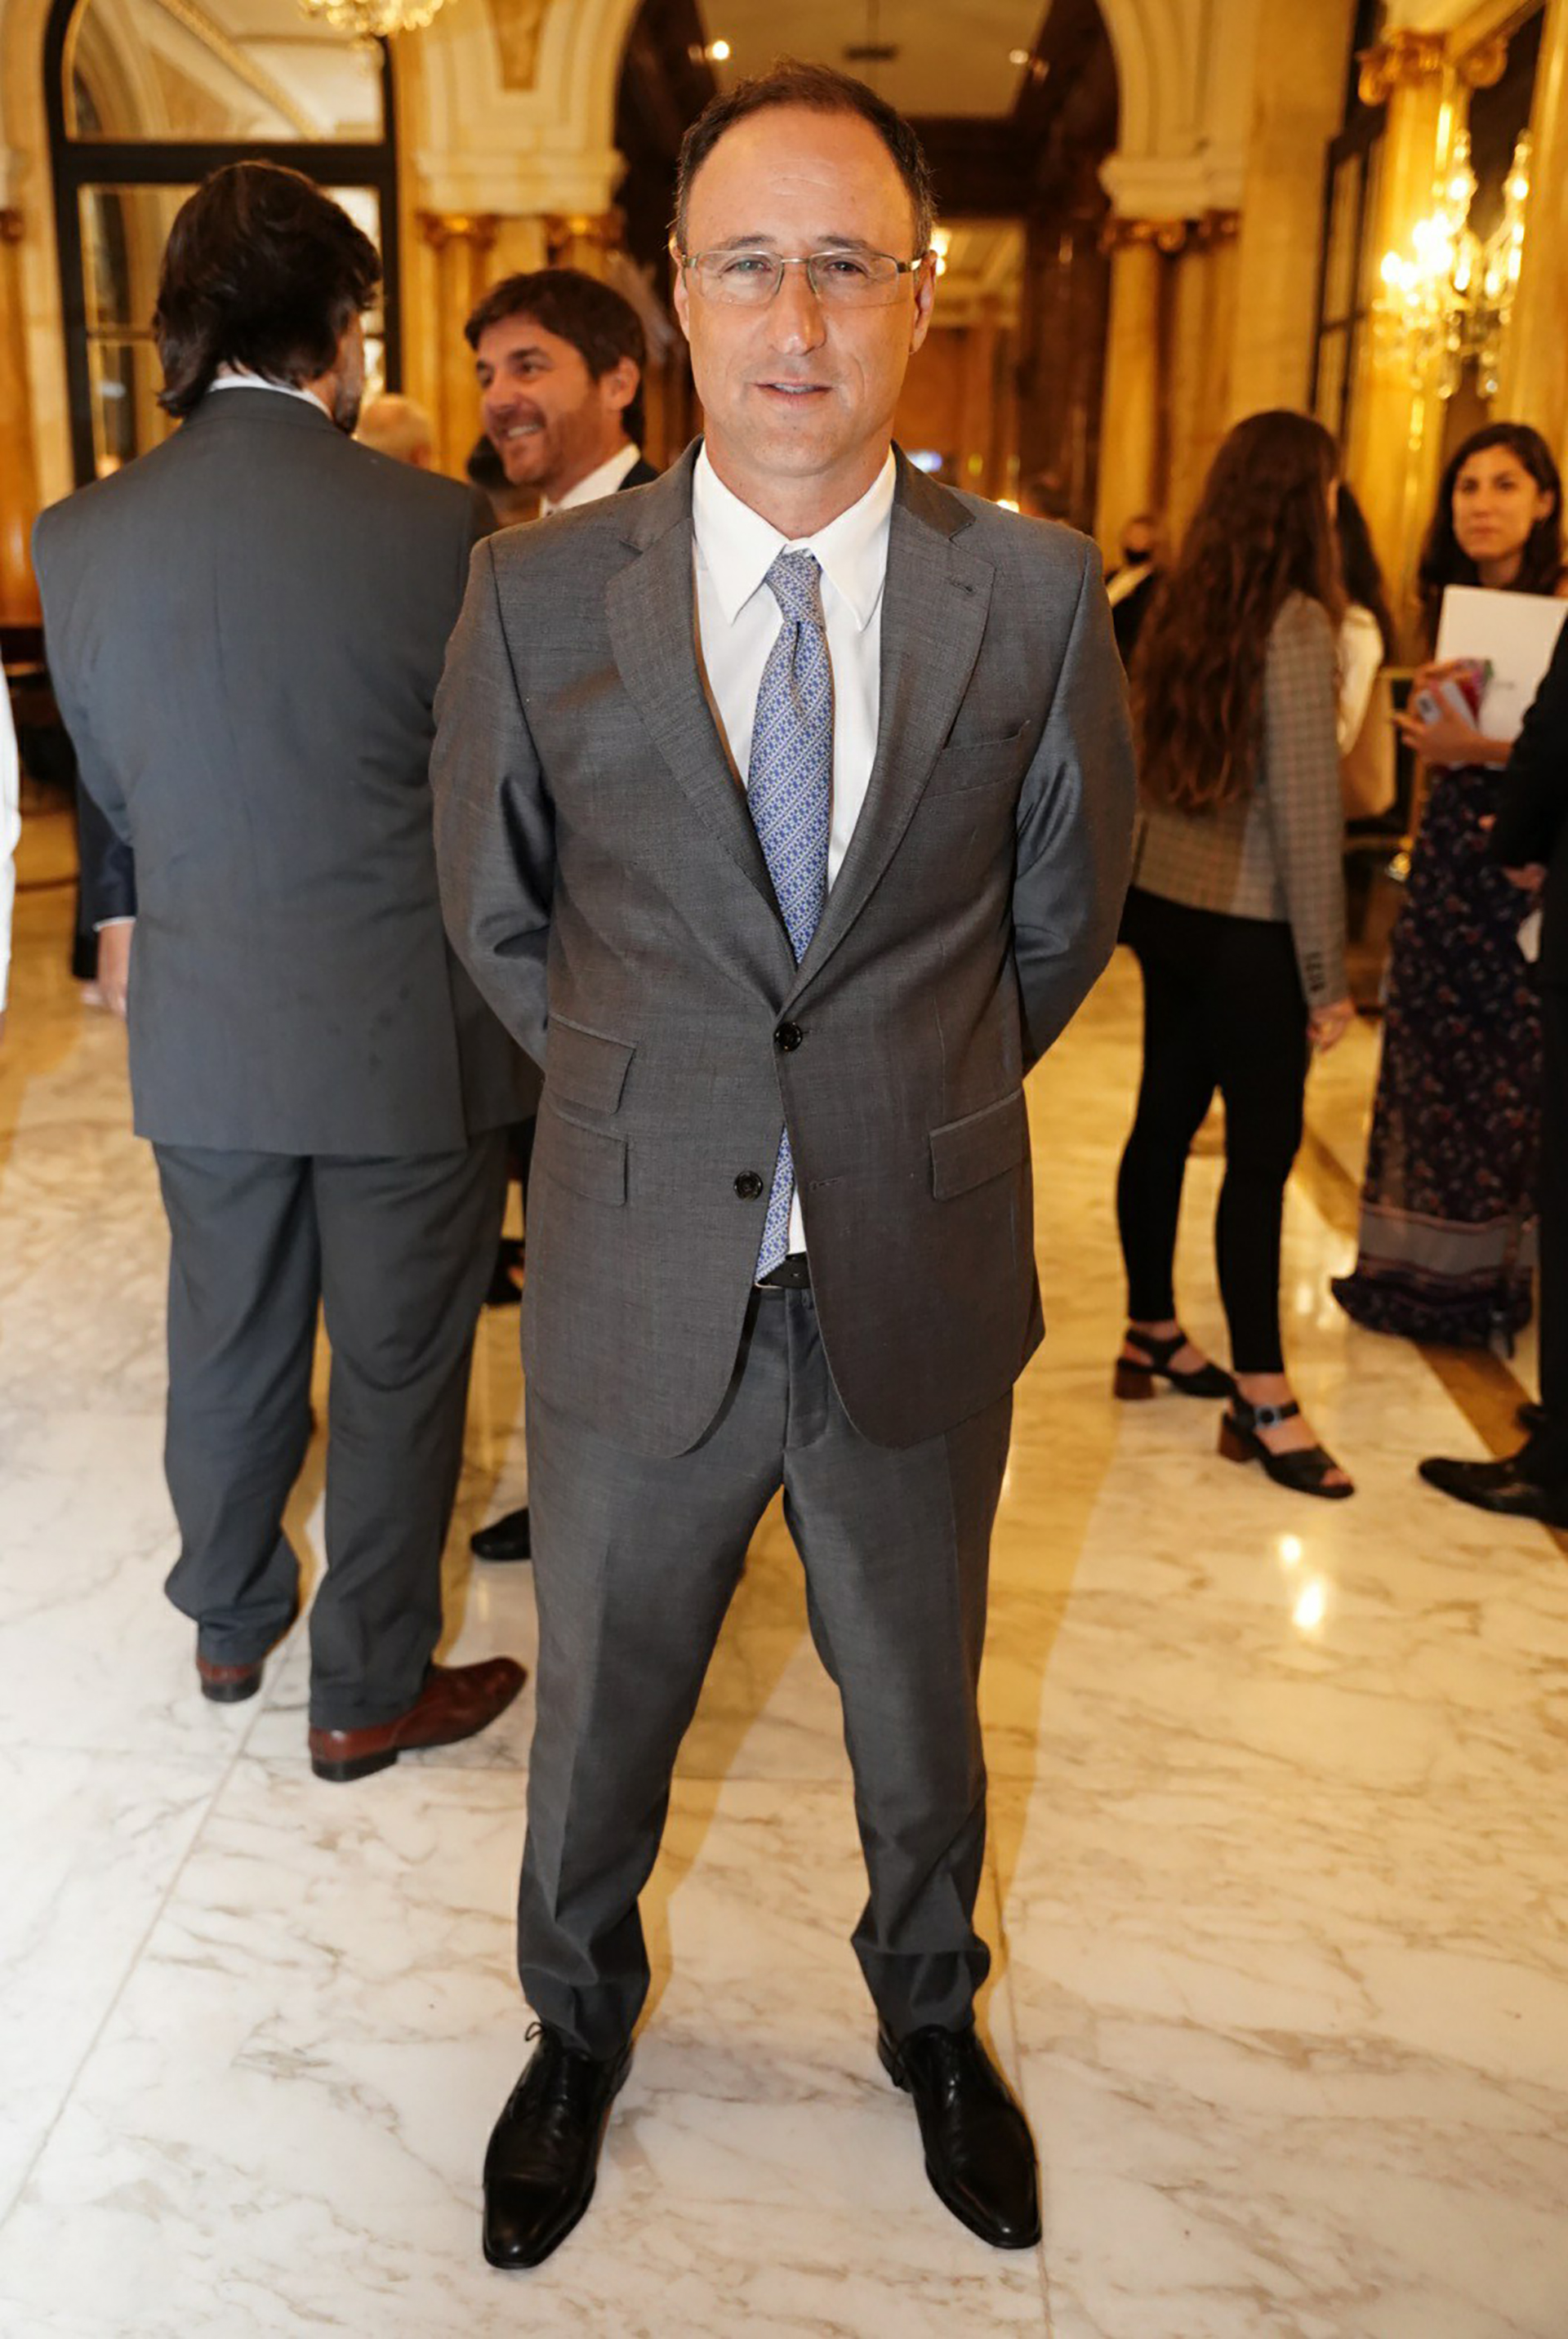 Diego Marías, integrante del Consejo de la Magistratura y ex diputado porteño

